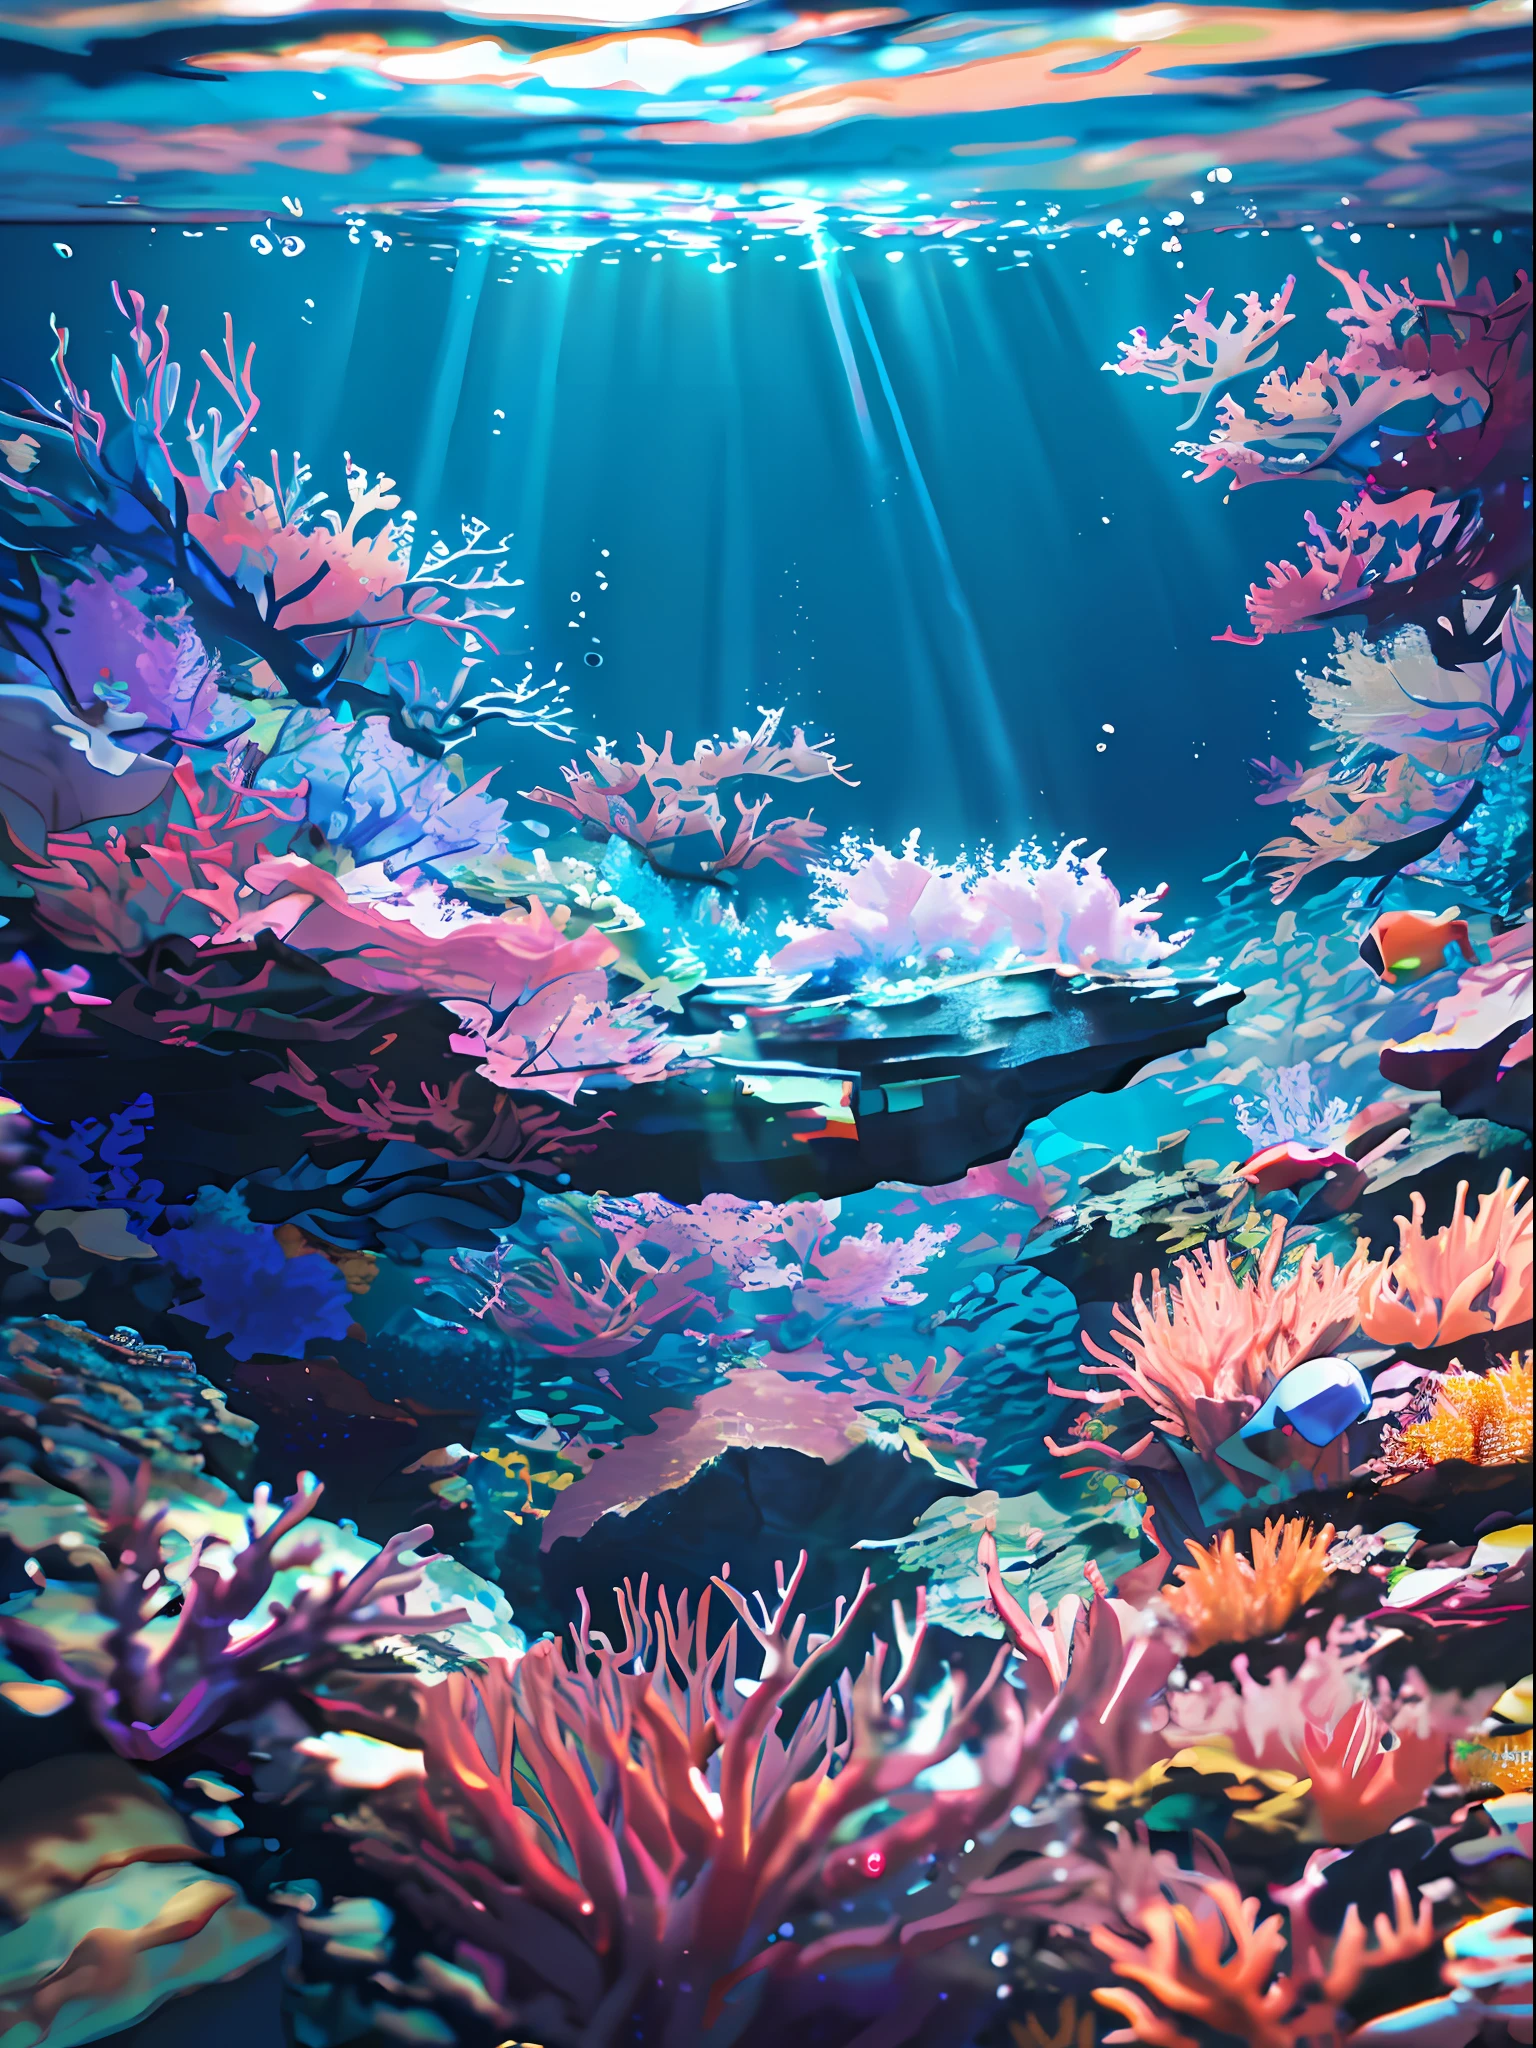 (걸작, 최고의 품질:1.2), (인간은 없어, 낭떠러지, 수중, 관점, 밑에서부터:1.5), 8K, RAW 사진, 터무니없는, 아름다운 산호초, 바위, 많은 아주 작은 물고기, 다채로운 열대어, 빛 누출, 피사계 심도, 멋진 풍경, 필름 그레인, 색수차, 동적 조명, 극적인 조명, HDR, 사실적인, 필름 그레인, 색수차, 고등어, 매우 상세한, 세세하게, 매우 상세한, 그림자, 날카로운 초점